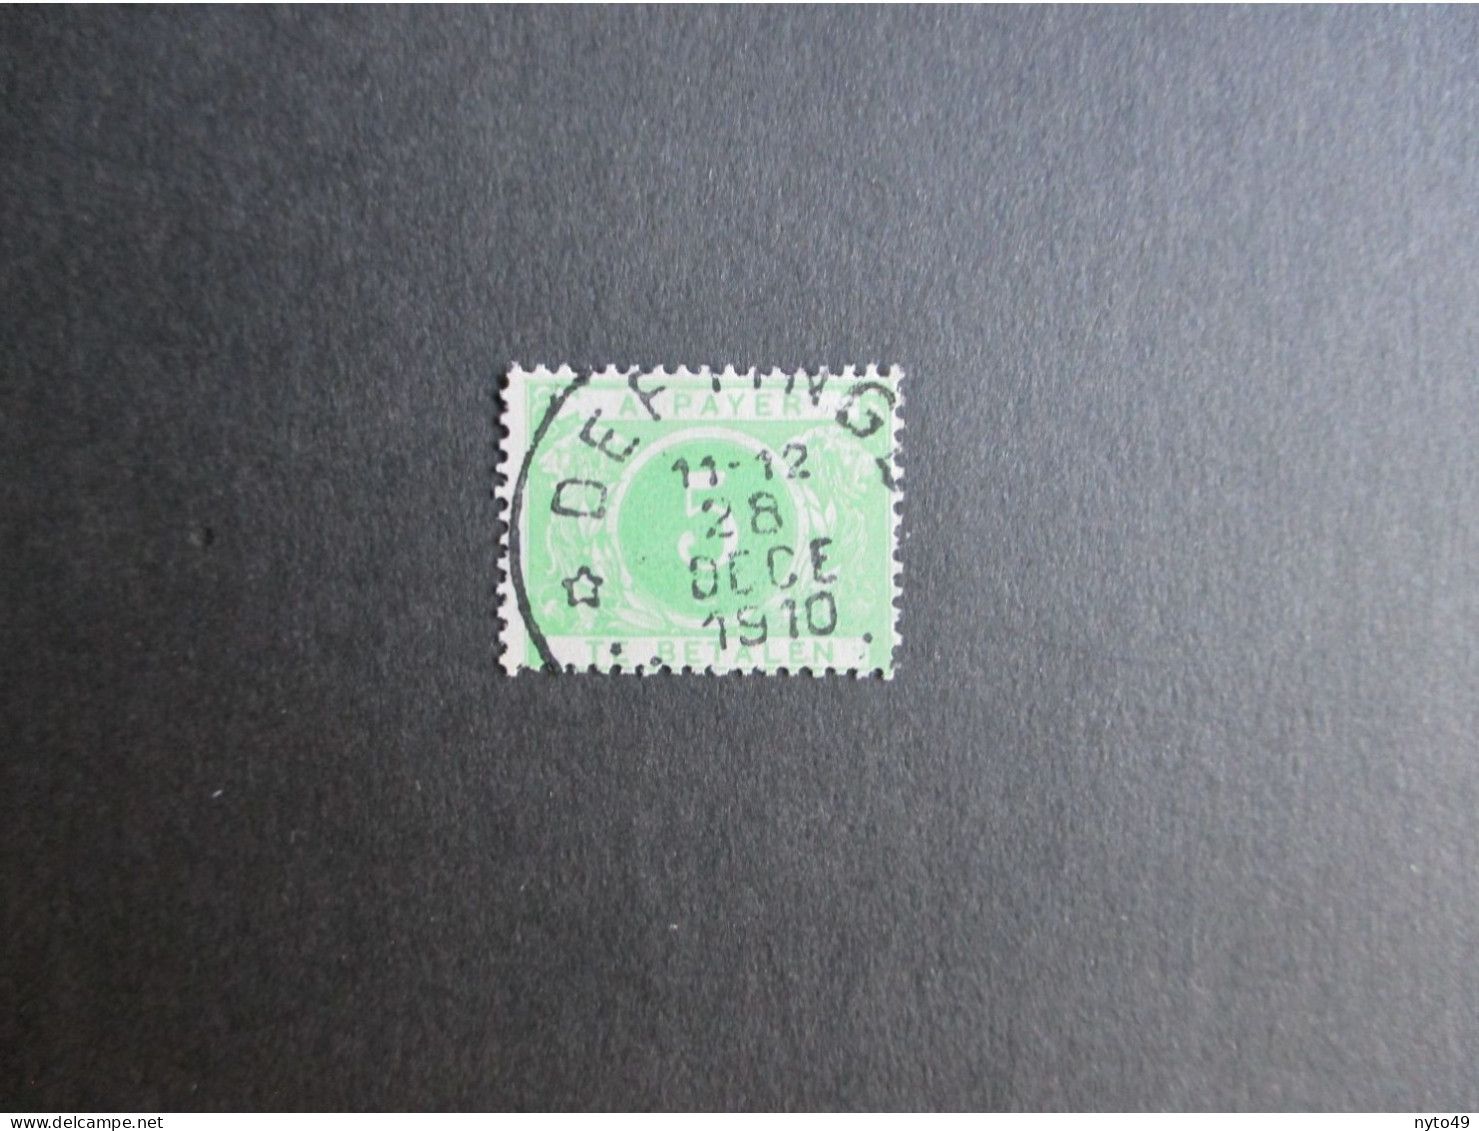 Nr TX3 - Centrale Sterstempel Deftinge - Postmarks With Stars